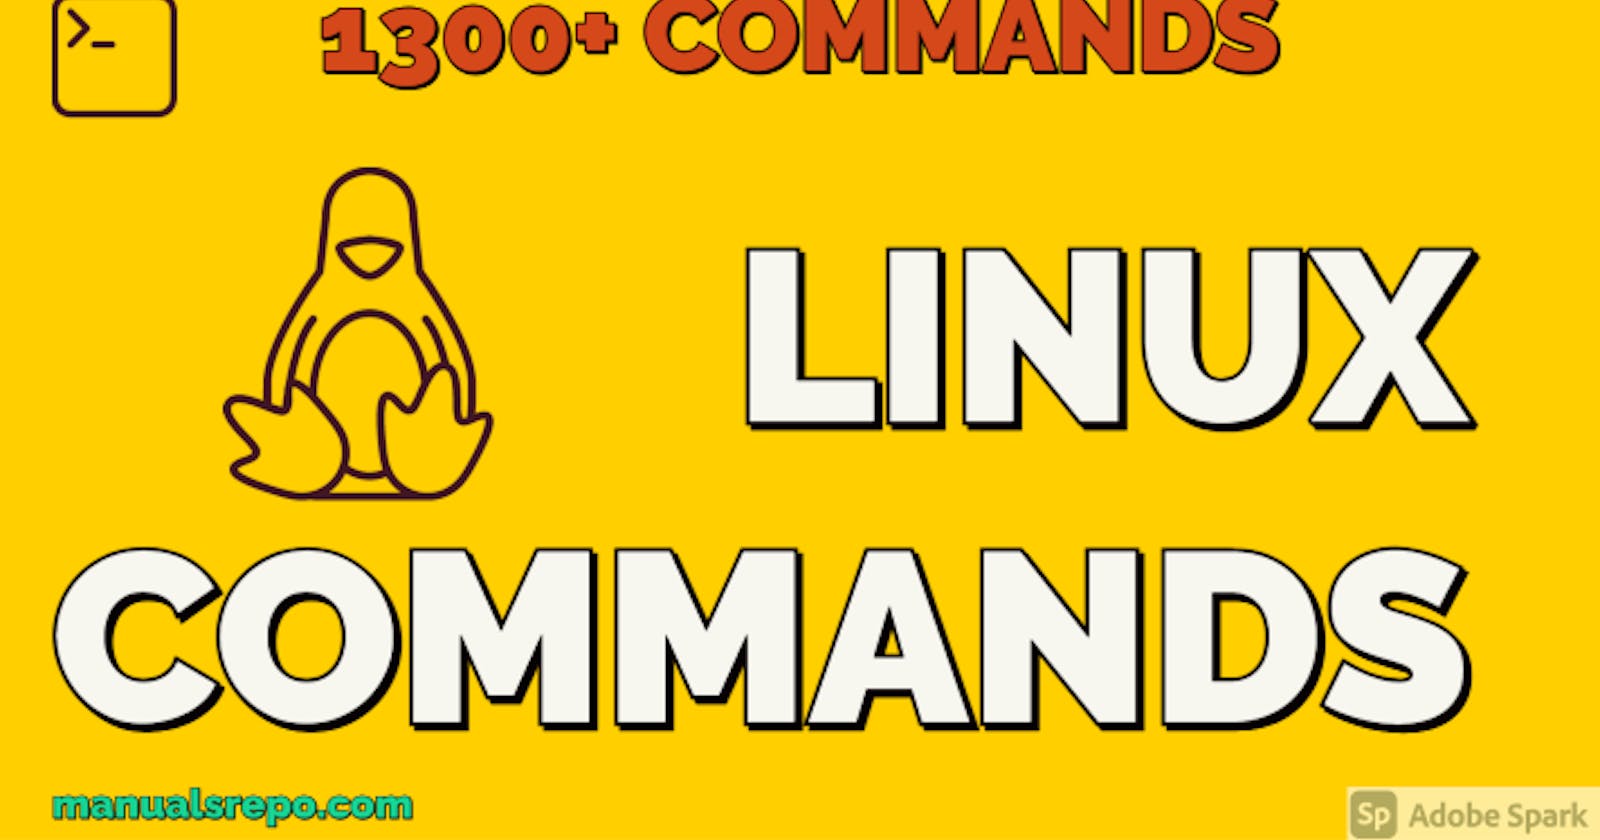 1300+ Linux commands manuals